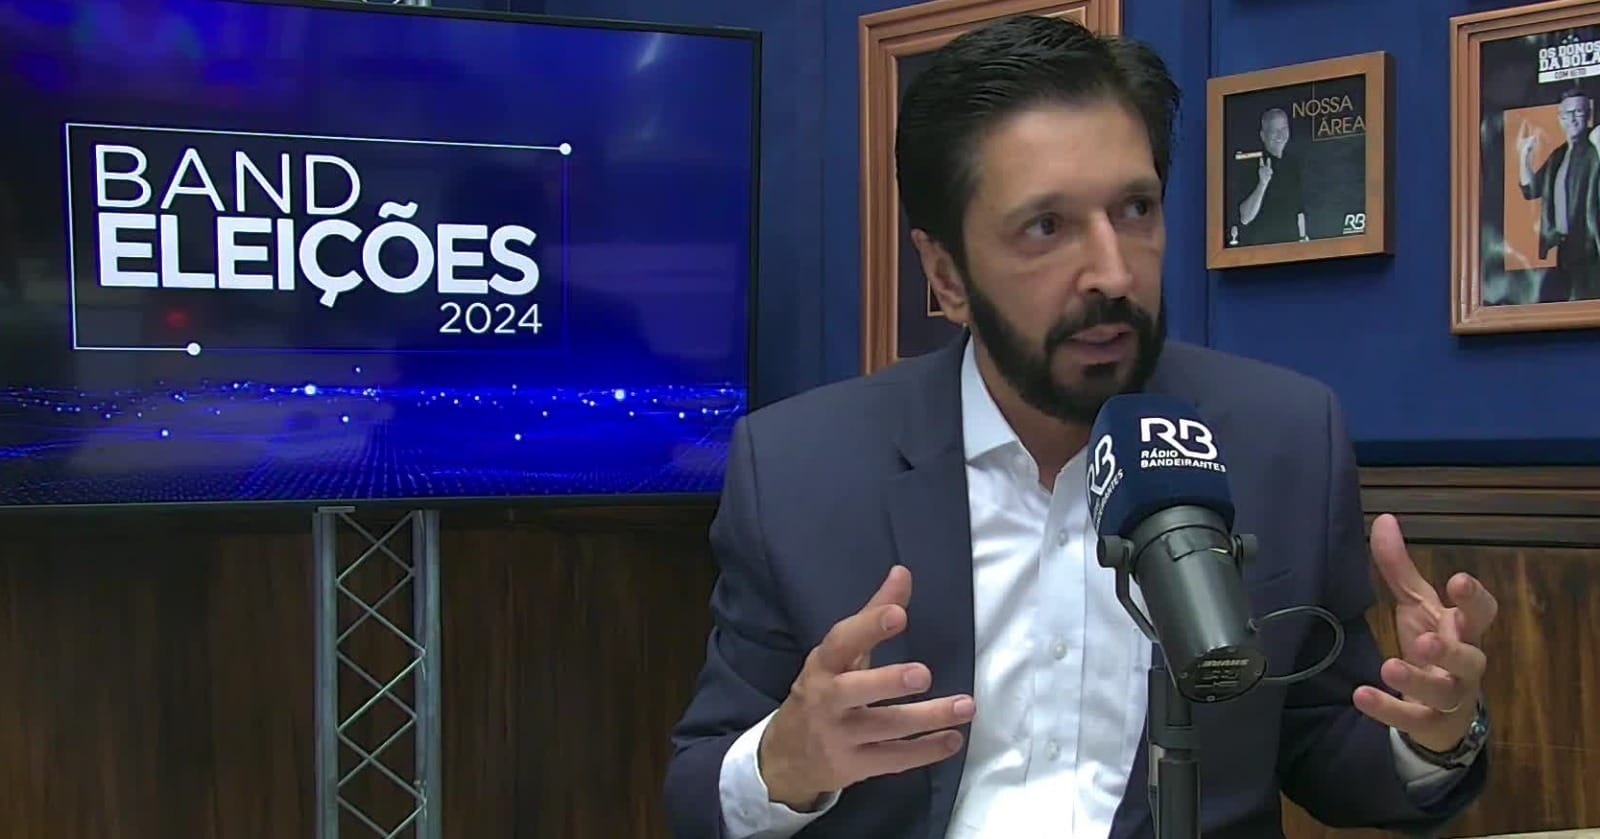 AO VIVO: Rádio Bandeirantes entrevista Ricardo Nunes, pré-candidato à reeleição em SP